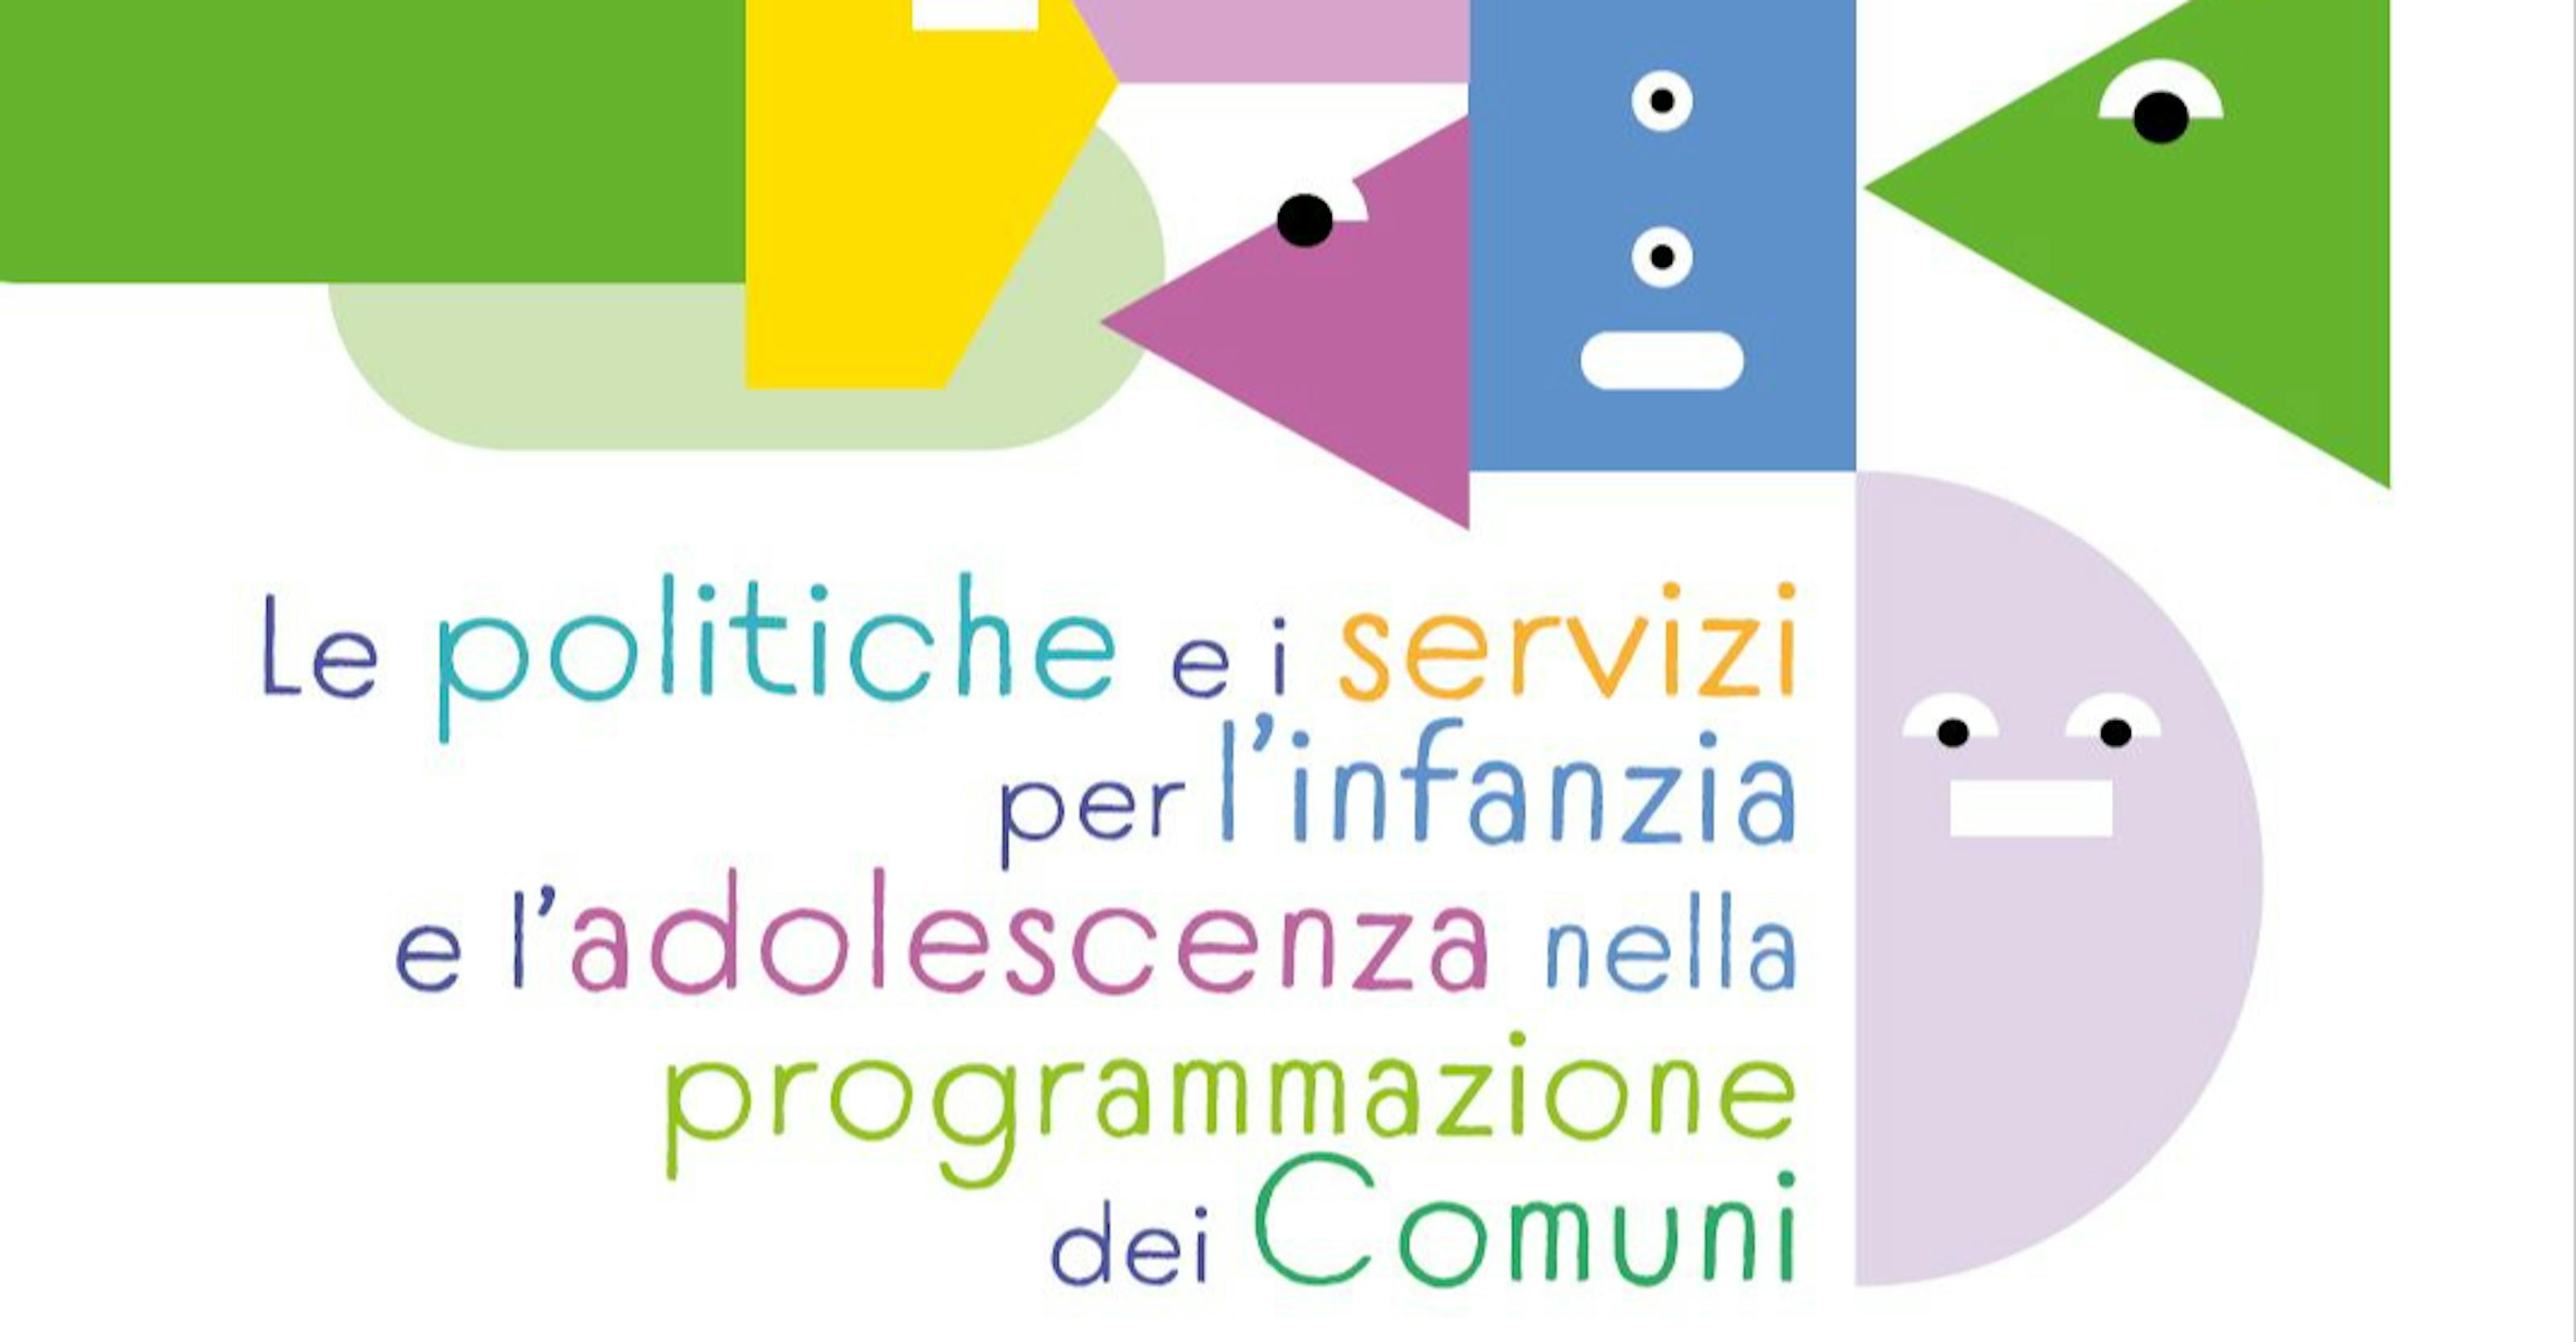 Seminario Prato: le politiche e i servizi per infanzia e adolescenza nella programmazione dei Comuni